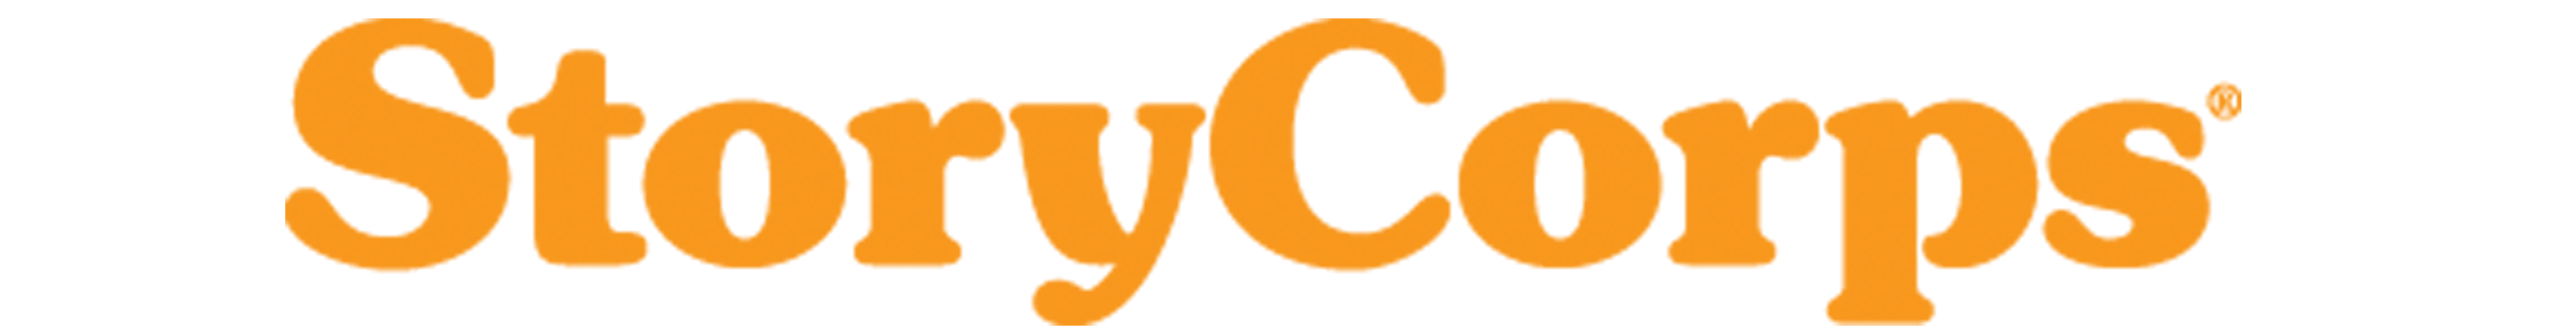 large storycorps logo